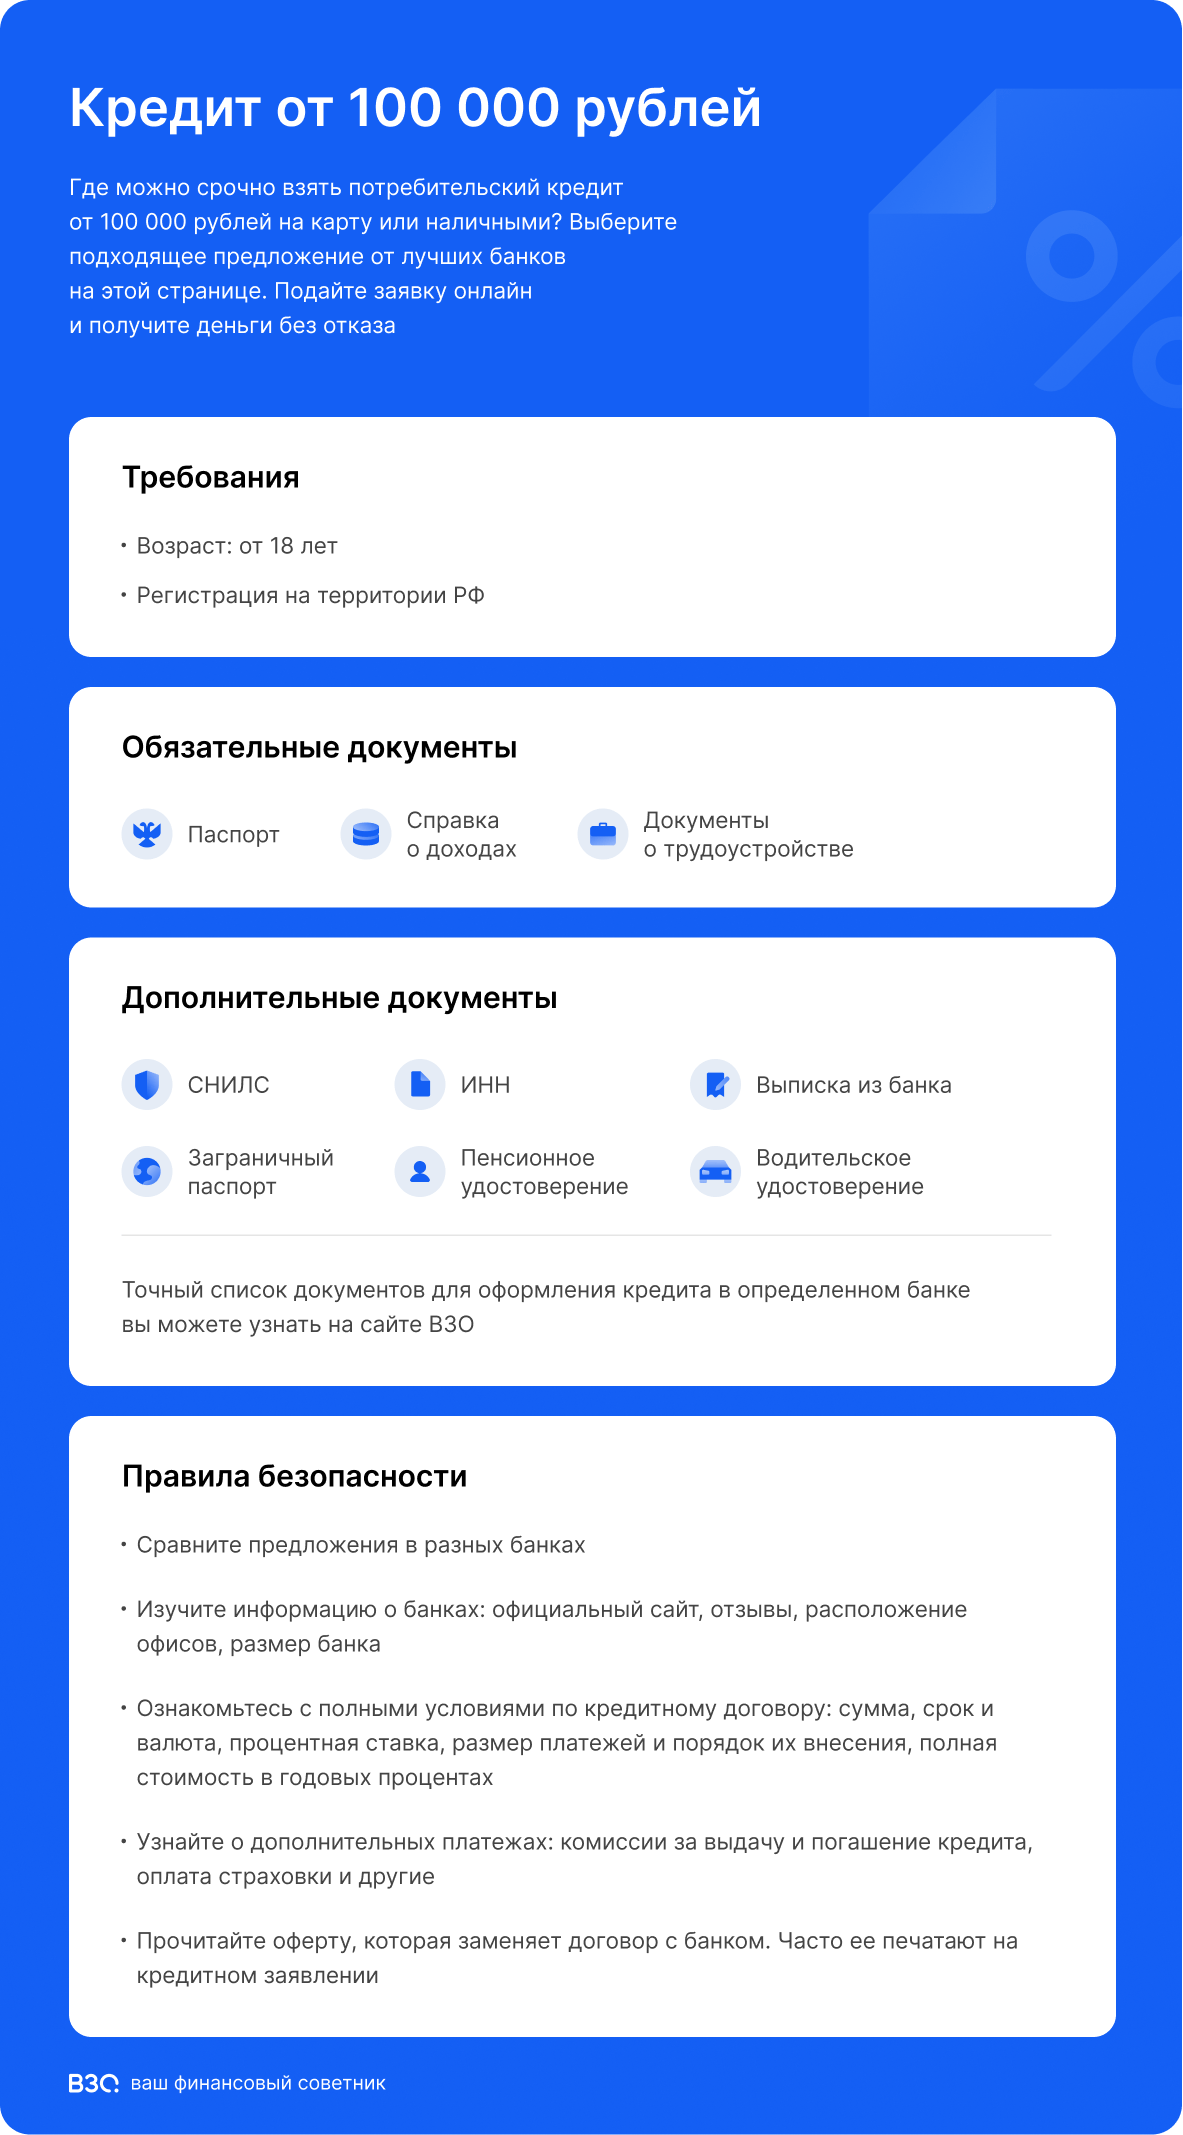 Кредиты от 100 000 рублей - рейтинг 2019